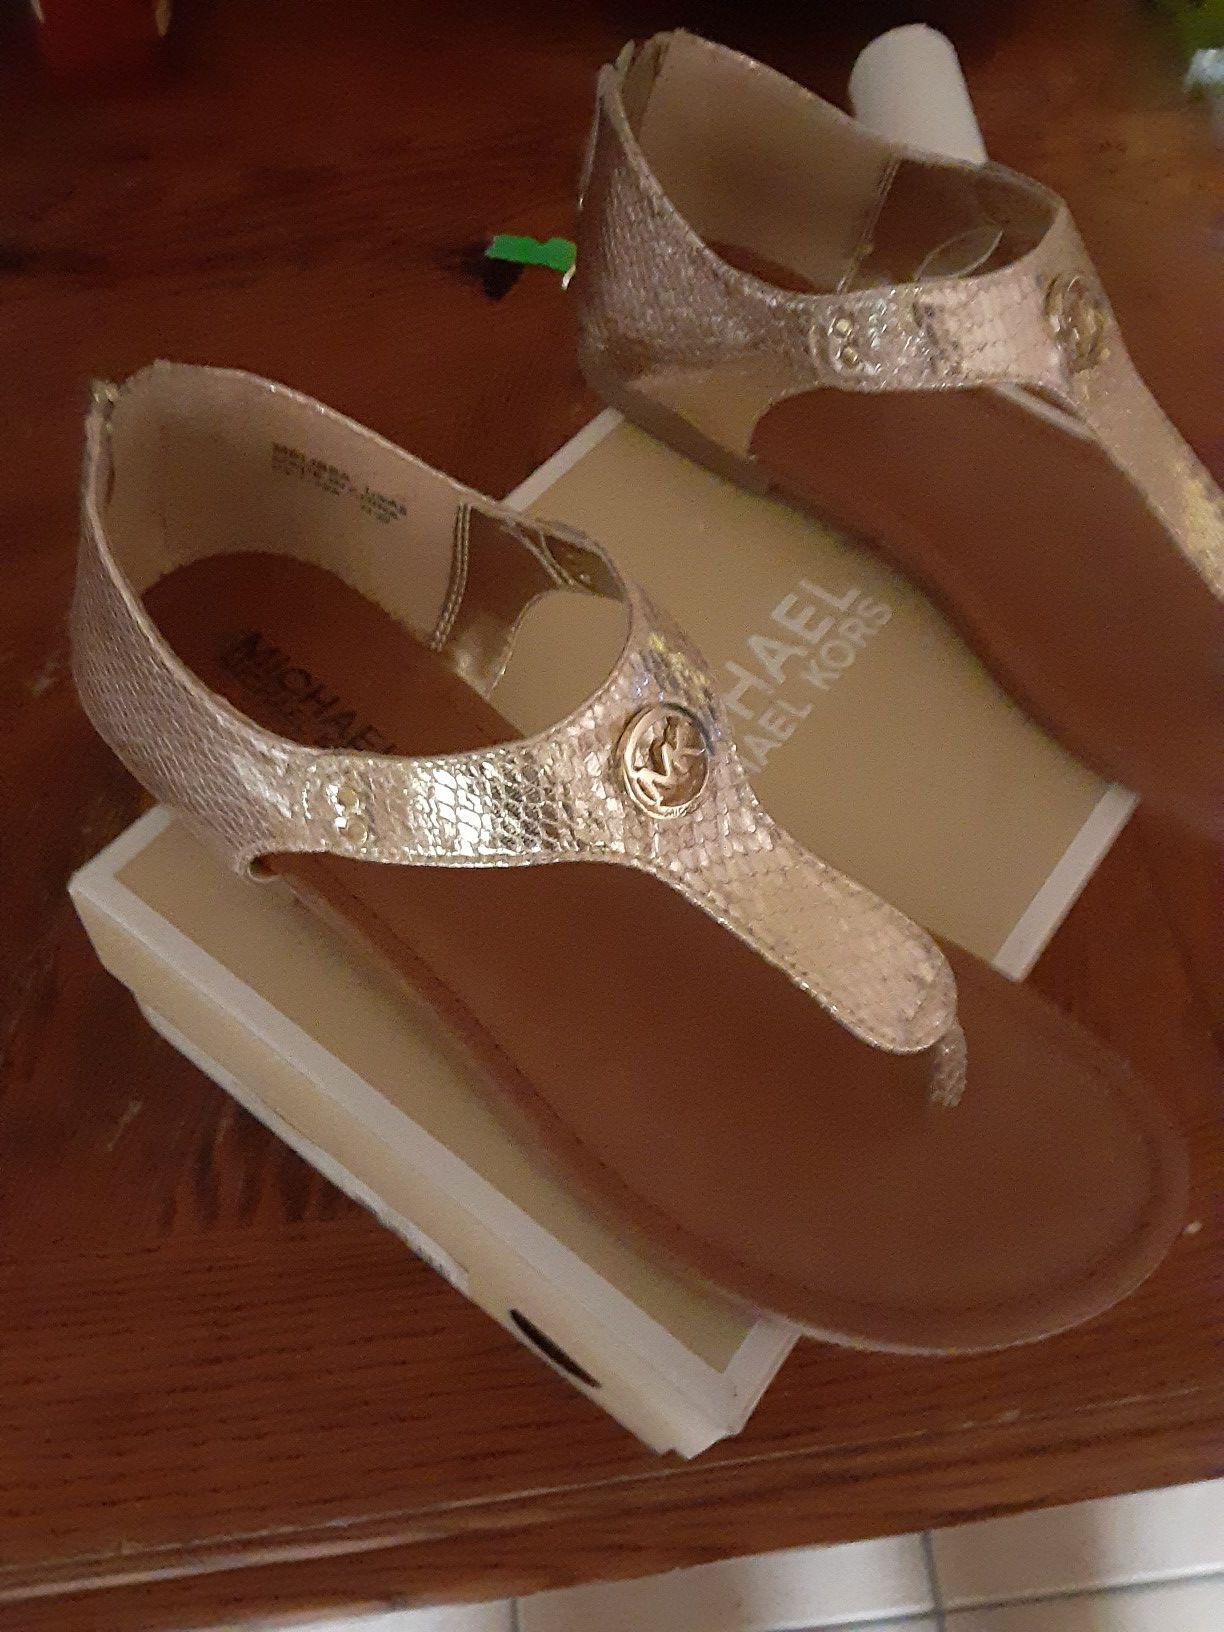 Michael Kors sandals size 5